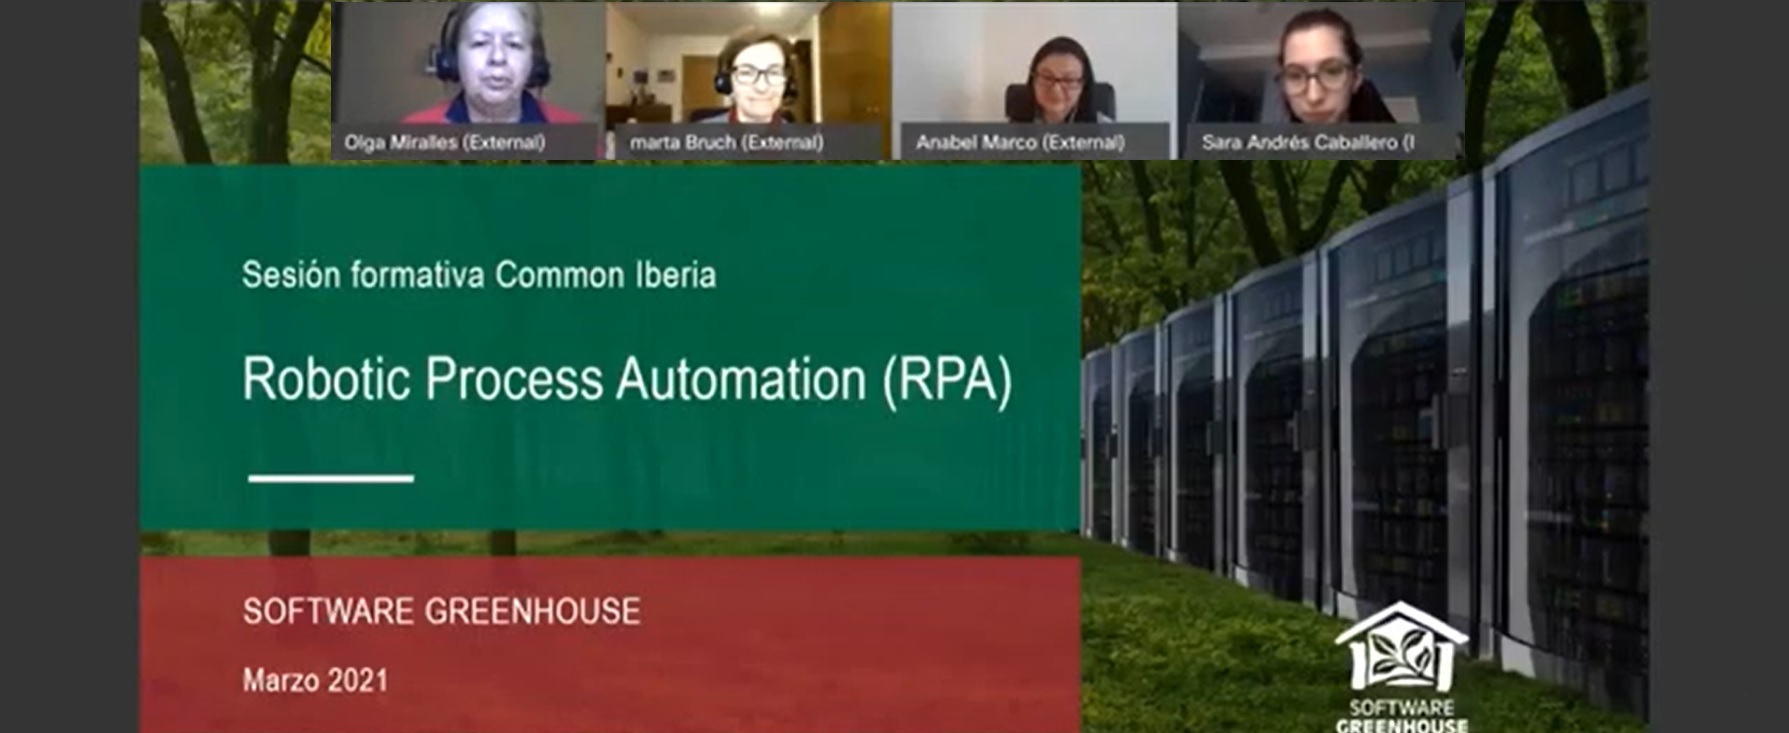 Software Greenhouse presenta la tecnología RPA en Common Iberia